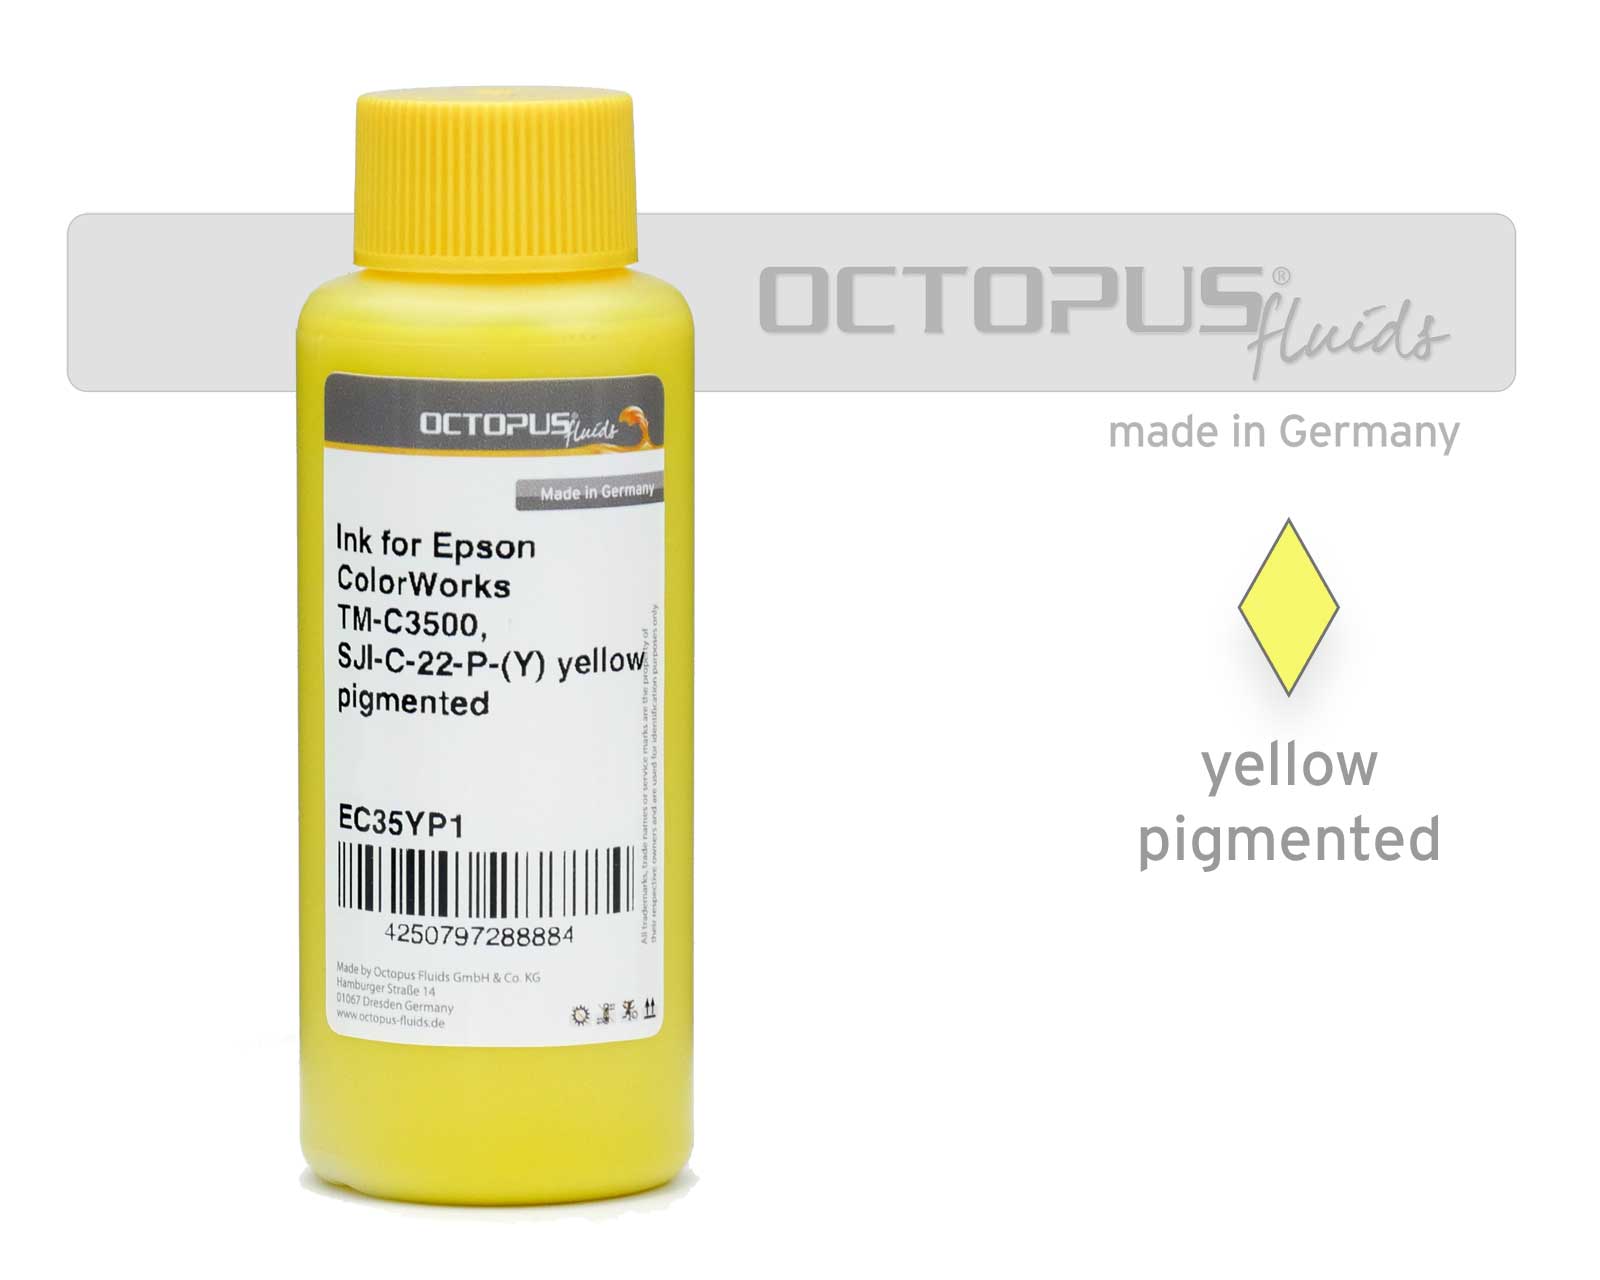 Inchiostro di ricarica per Epson ColorWorks TM-C3500, SJI-C-22-P-(Y) giallo